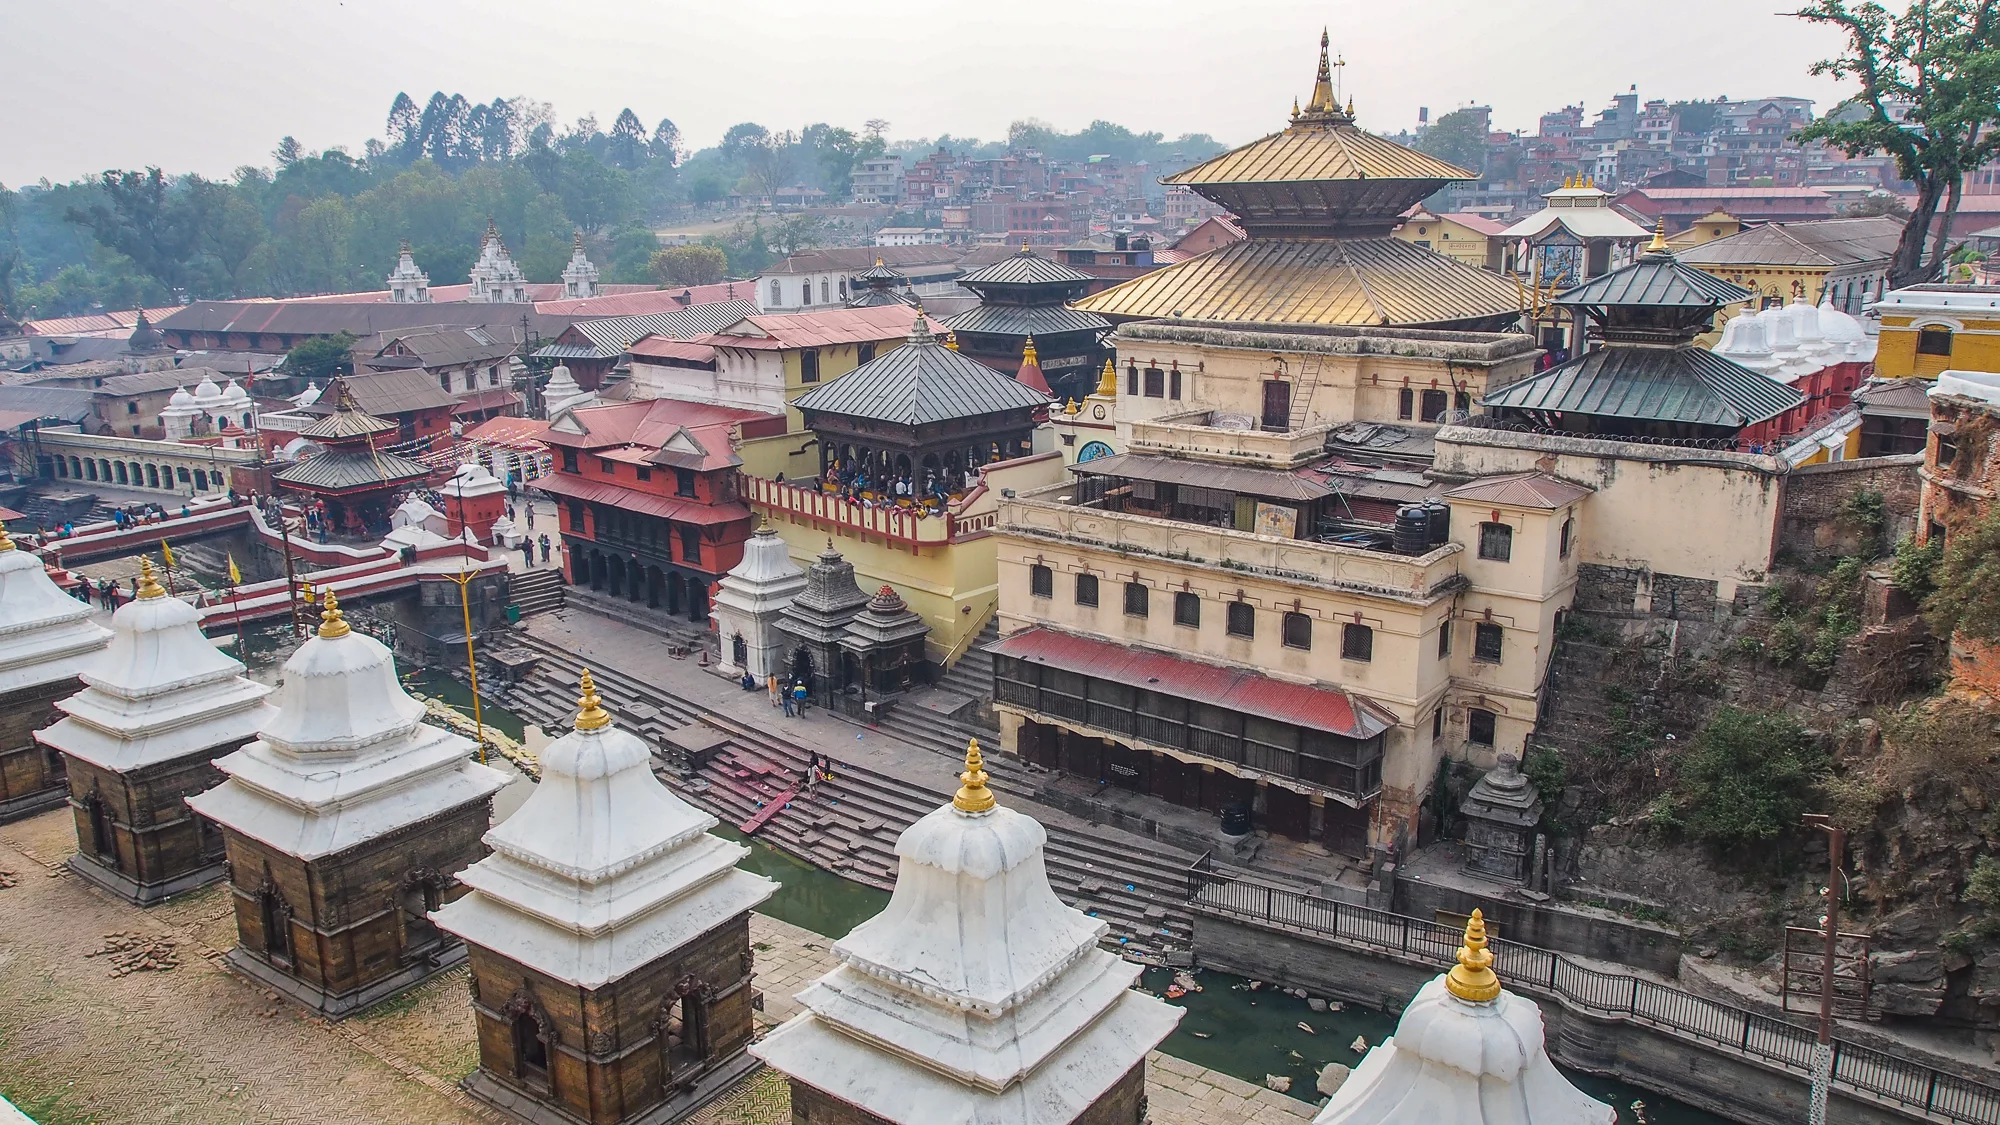 Pashupatinath main temple, Nepal